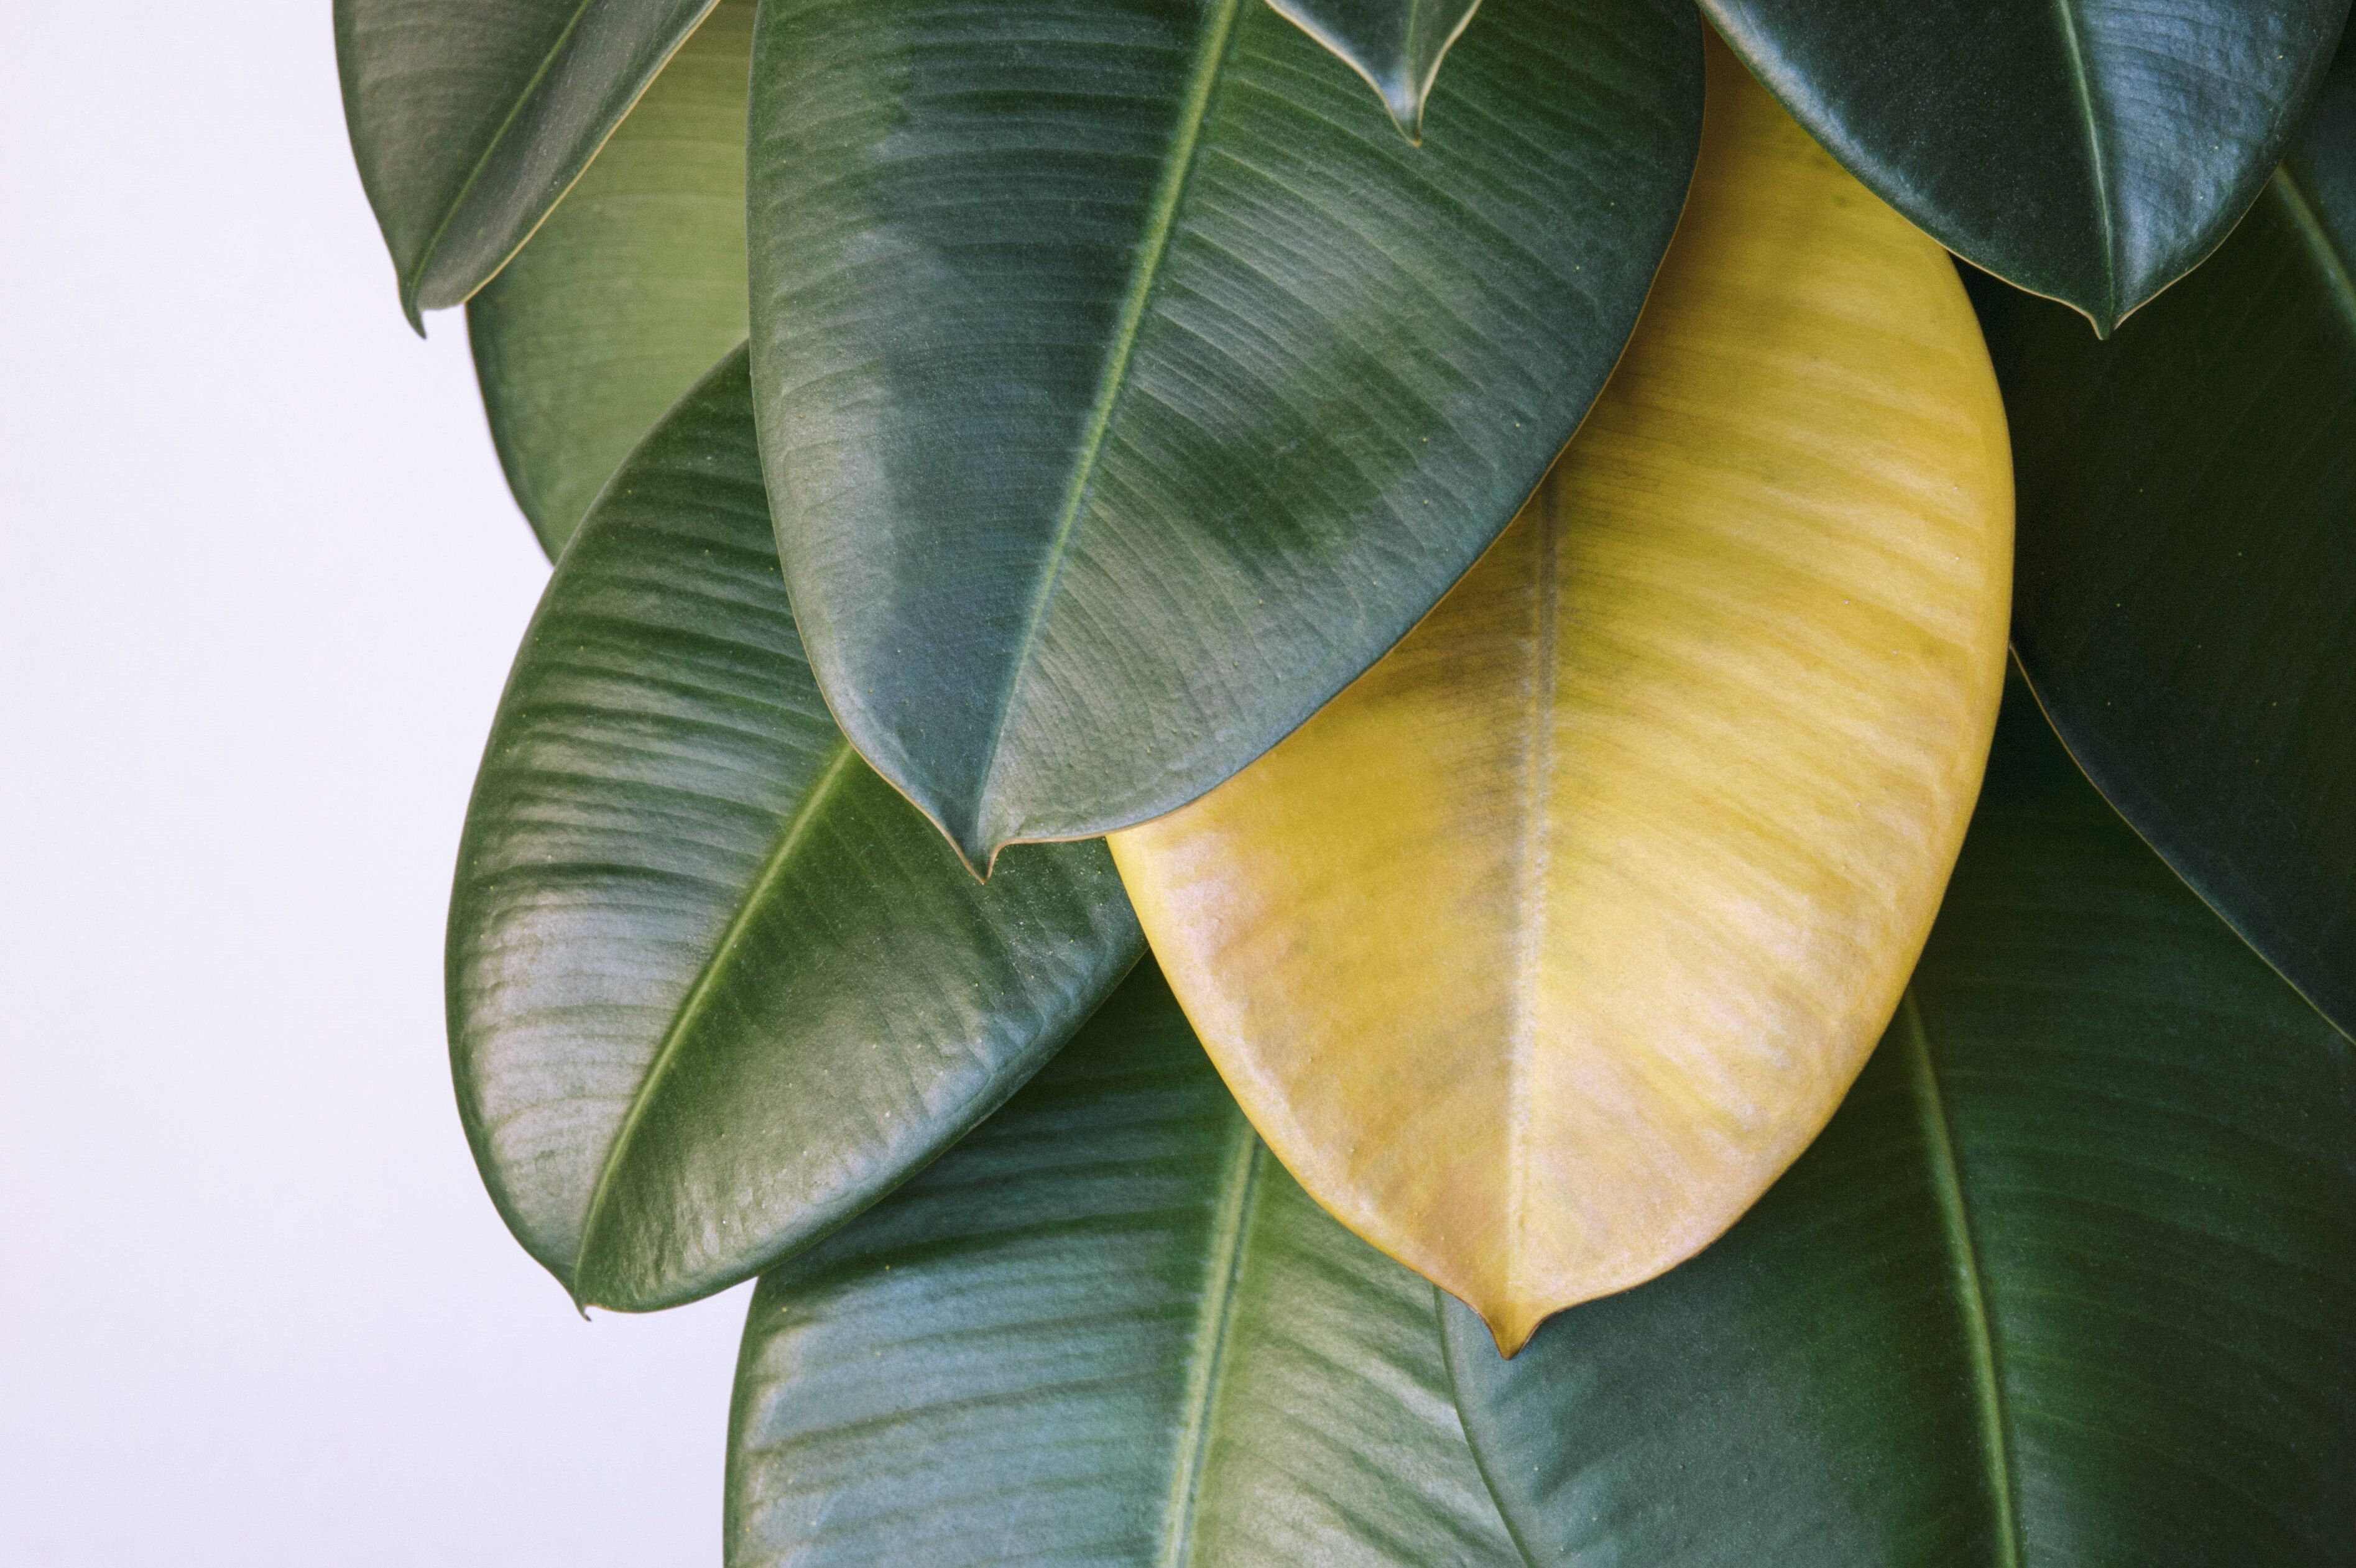 Из-за чего листья комнатных растений желтеют и опадают?